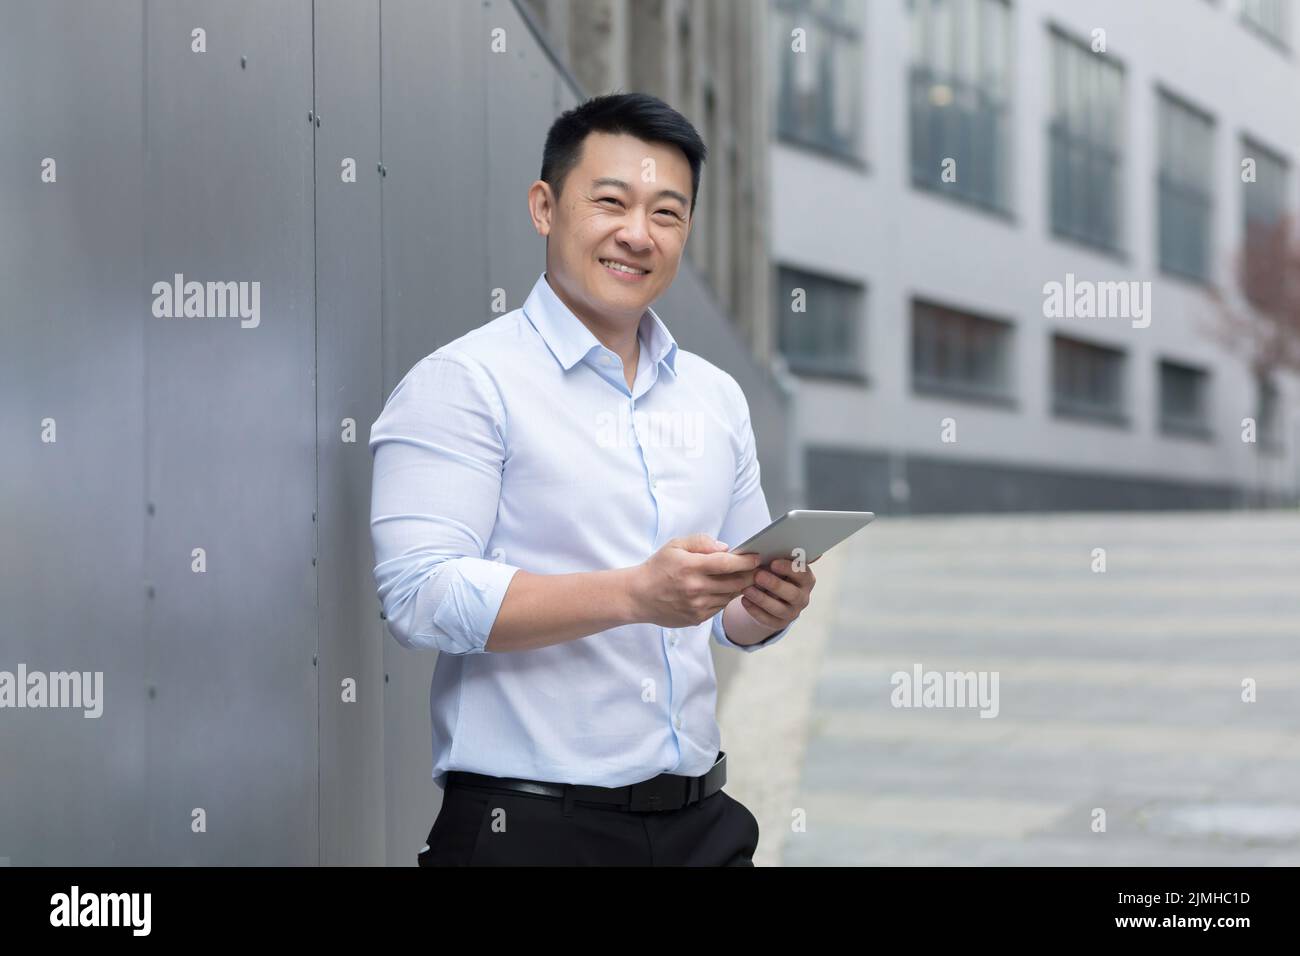 Erfolgreicher asiatischer Geschäftsmann mit Tablet-Computer in den Händen, lächelnd und mit Blick auf die Kamera, Mann, der vor dem Bürogebäude steht Stockfoto